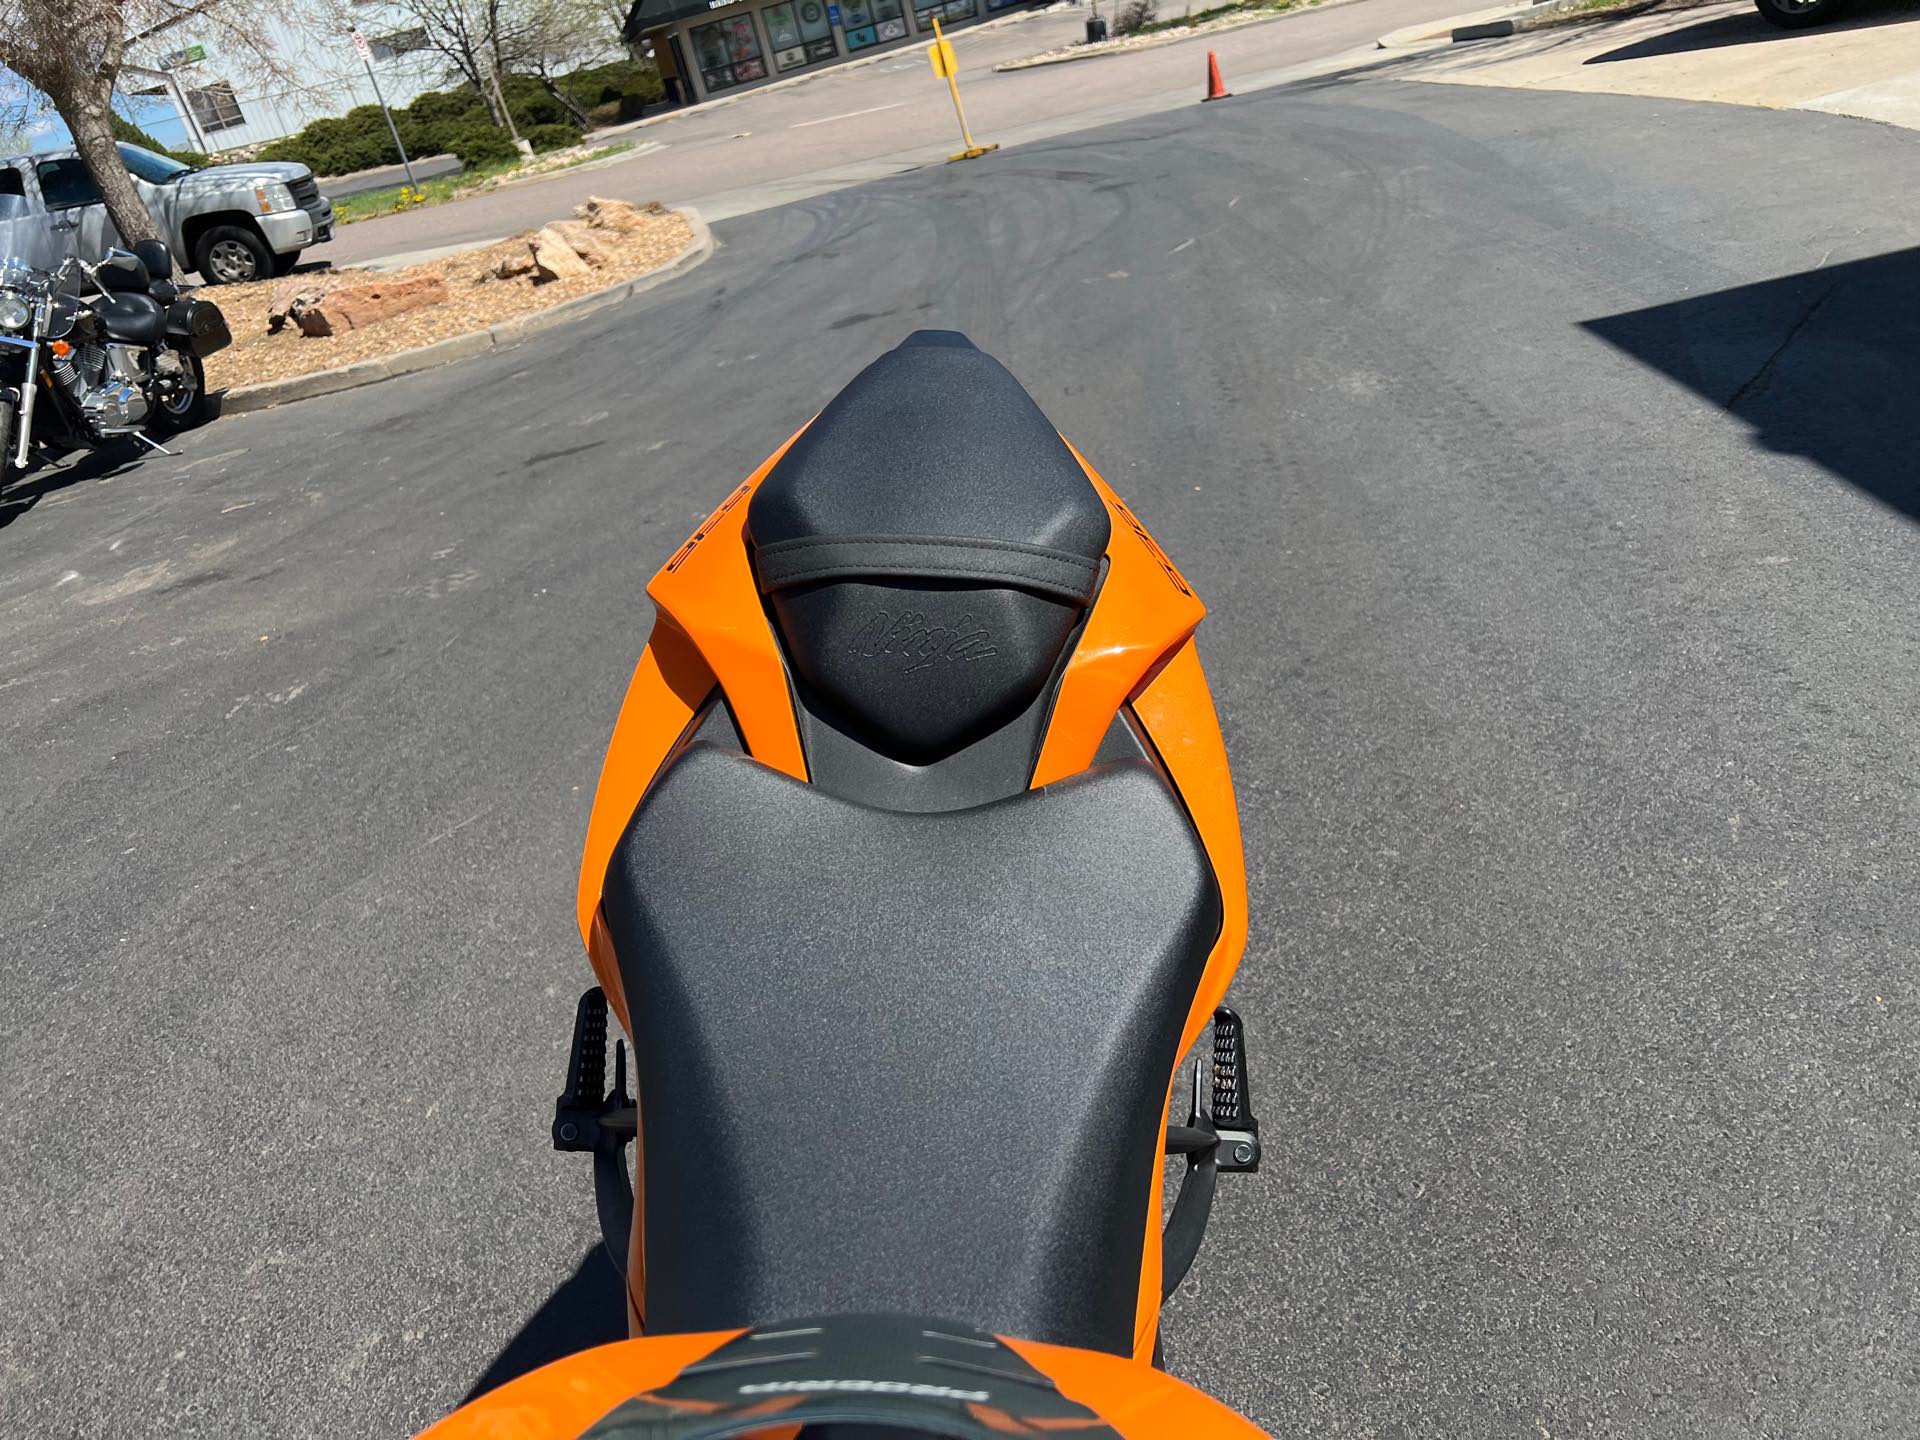 2020 Kawasaki Ninja ZX-6R ABS at Aces Motorcycles - Fort Collins